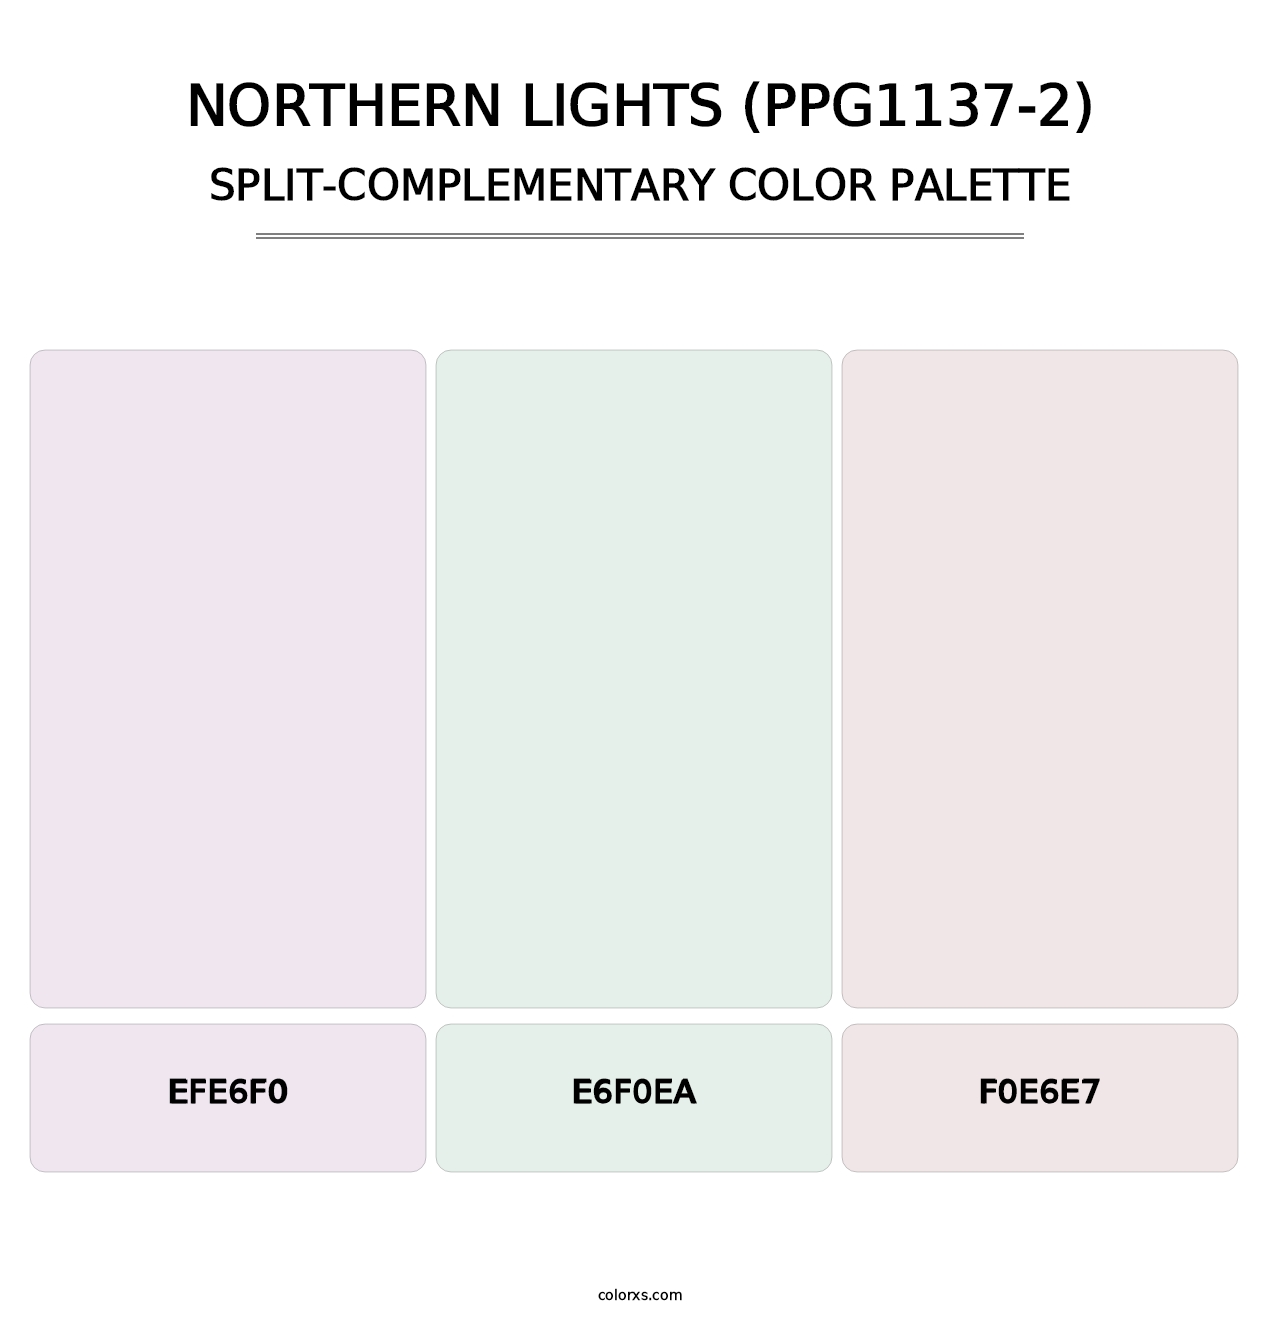 Northern Lights (PPG1137-2) - Split-Complementary Color Palette